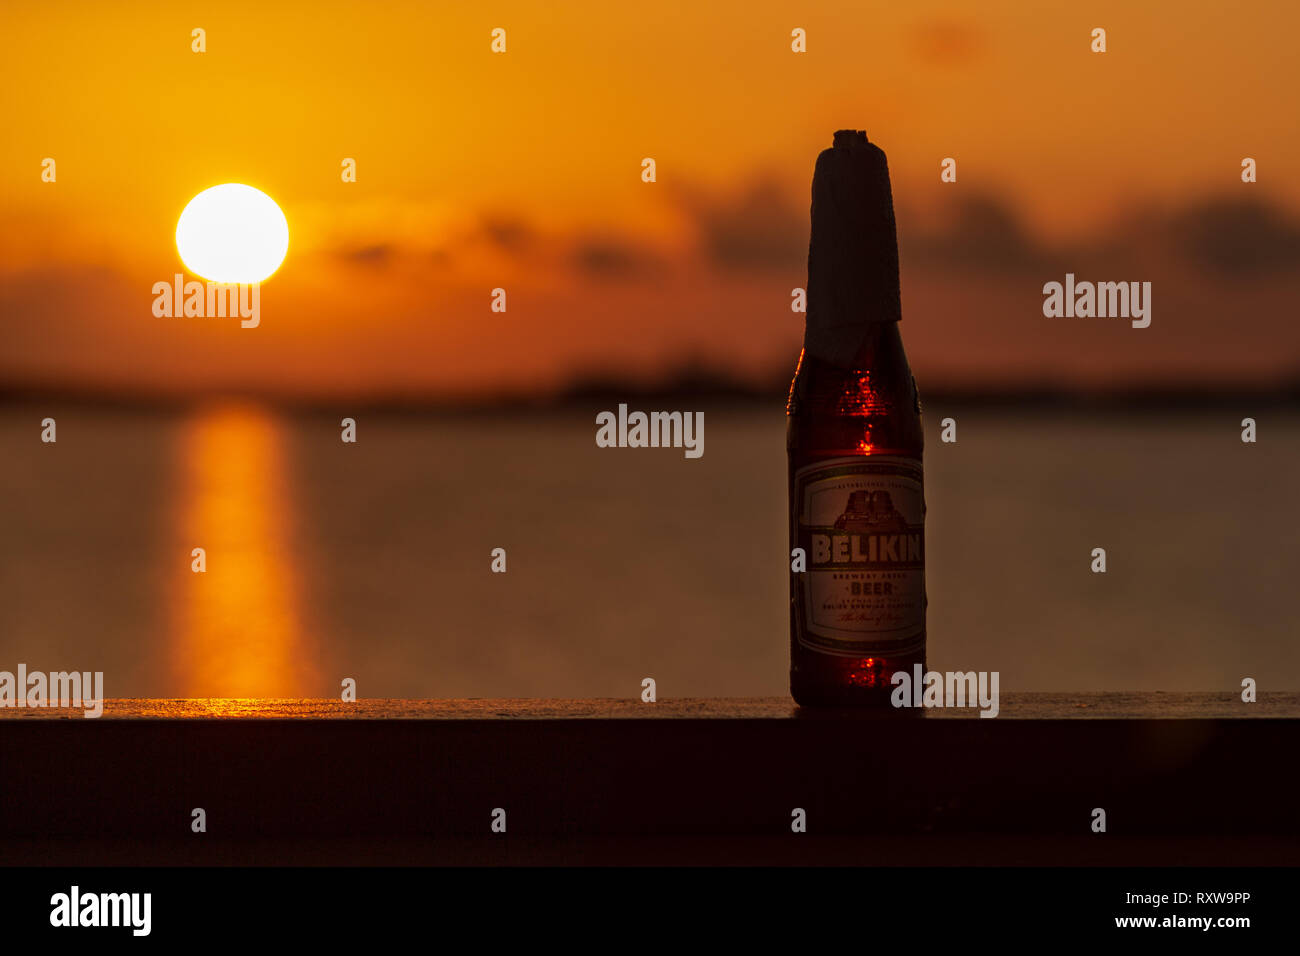 Ein eiskaltes Belikin und eine schöne Ambergris Caye Sonnenuntergang; zwei großartige Dinge über Belize. Belikin ist die größte Brauerei in Belize. Stockfoto